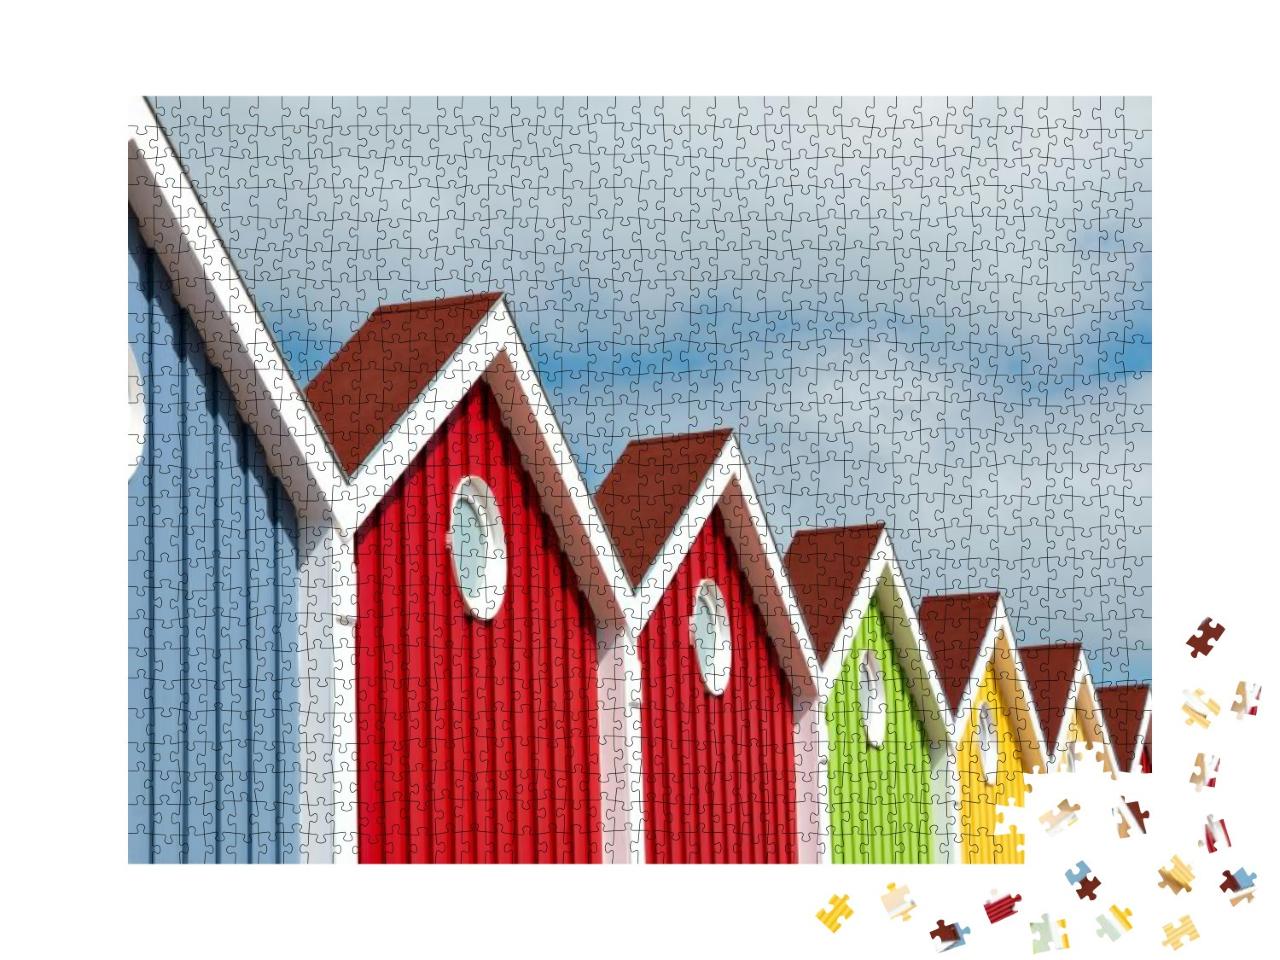 Puzzle 1000 Teile „Bunt leuchtende Häuserfront auf der Nordseeinsel Langeoog“